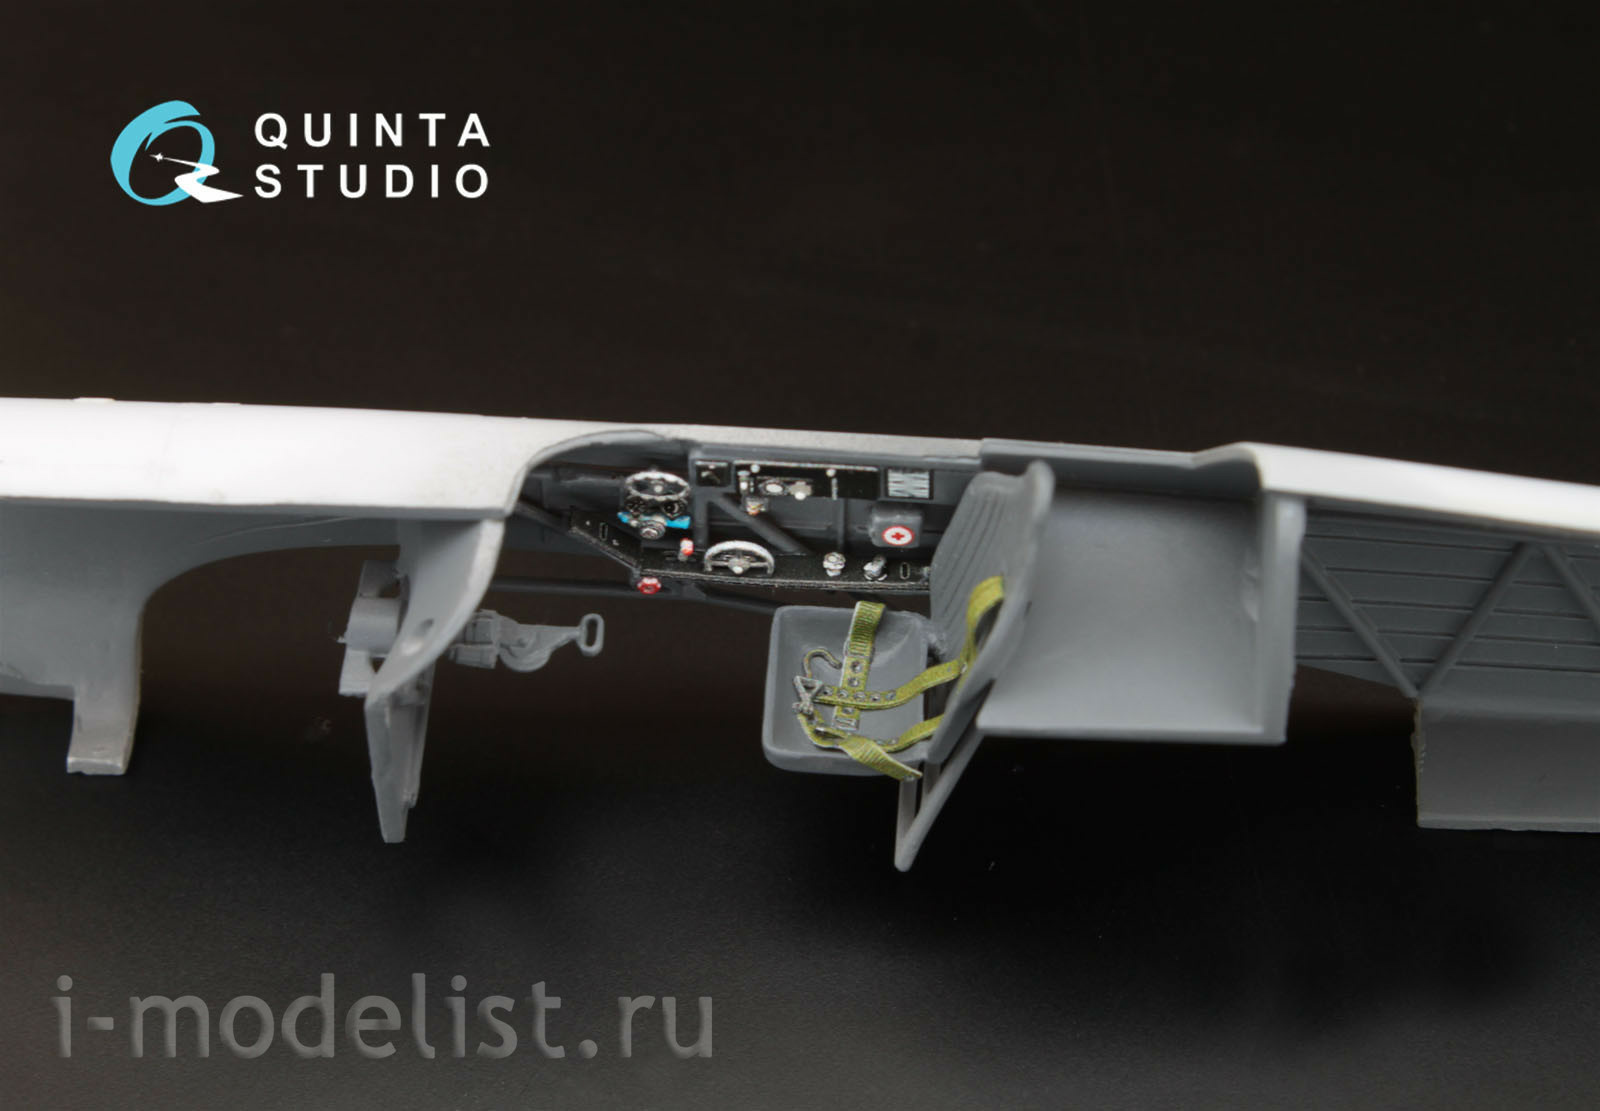 QD48003 Quinta Studio 1/48 3D Декаль интерьера кабины Yakovlev-1 (средние серии) (для любых моделей)